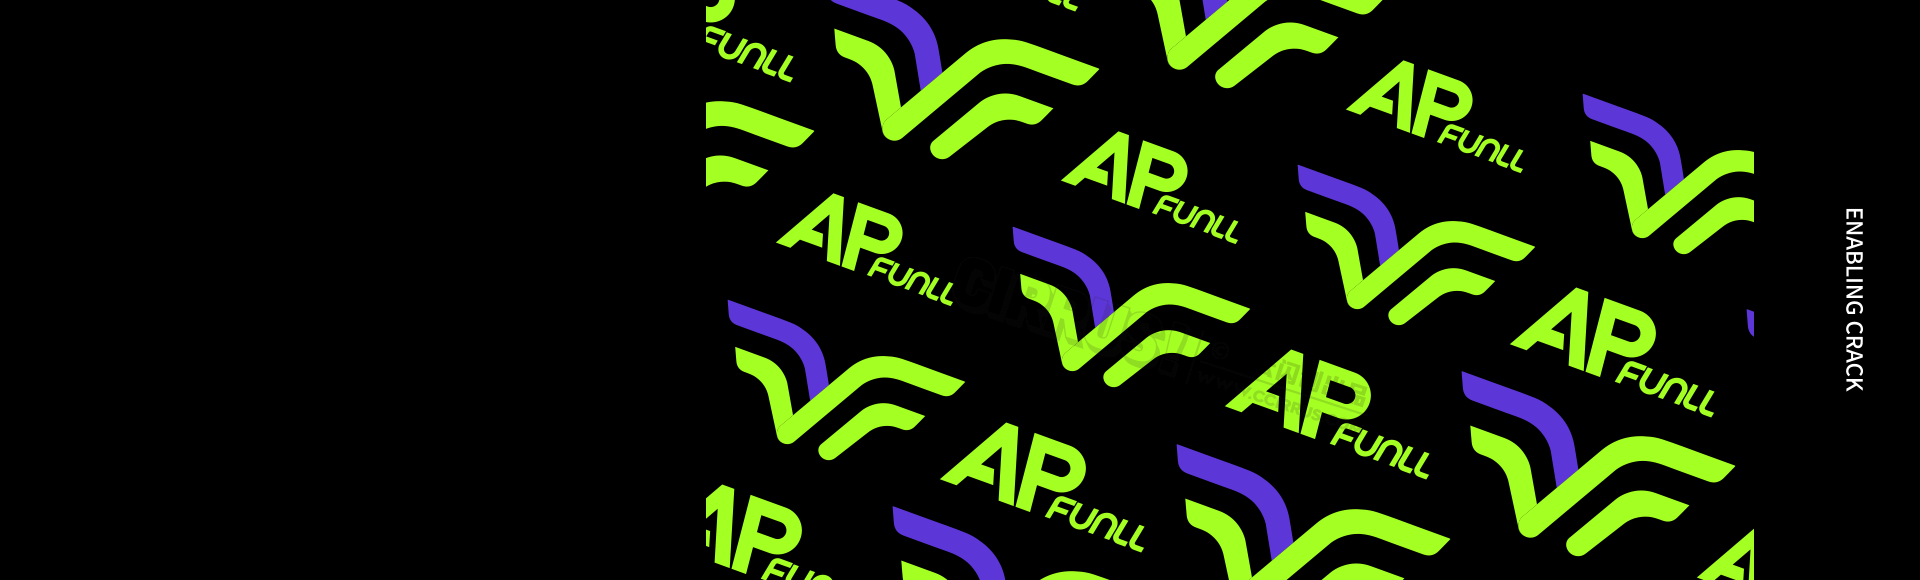 APFUNLL運動潮流娛樂體育空間主題公園品牌IP視覺設計